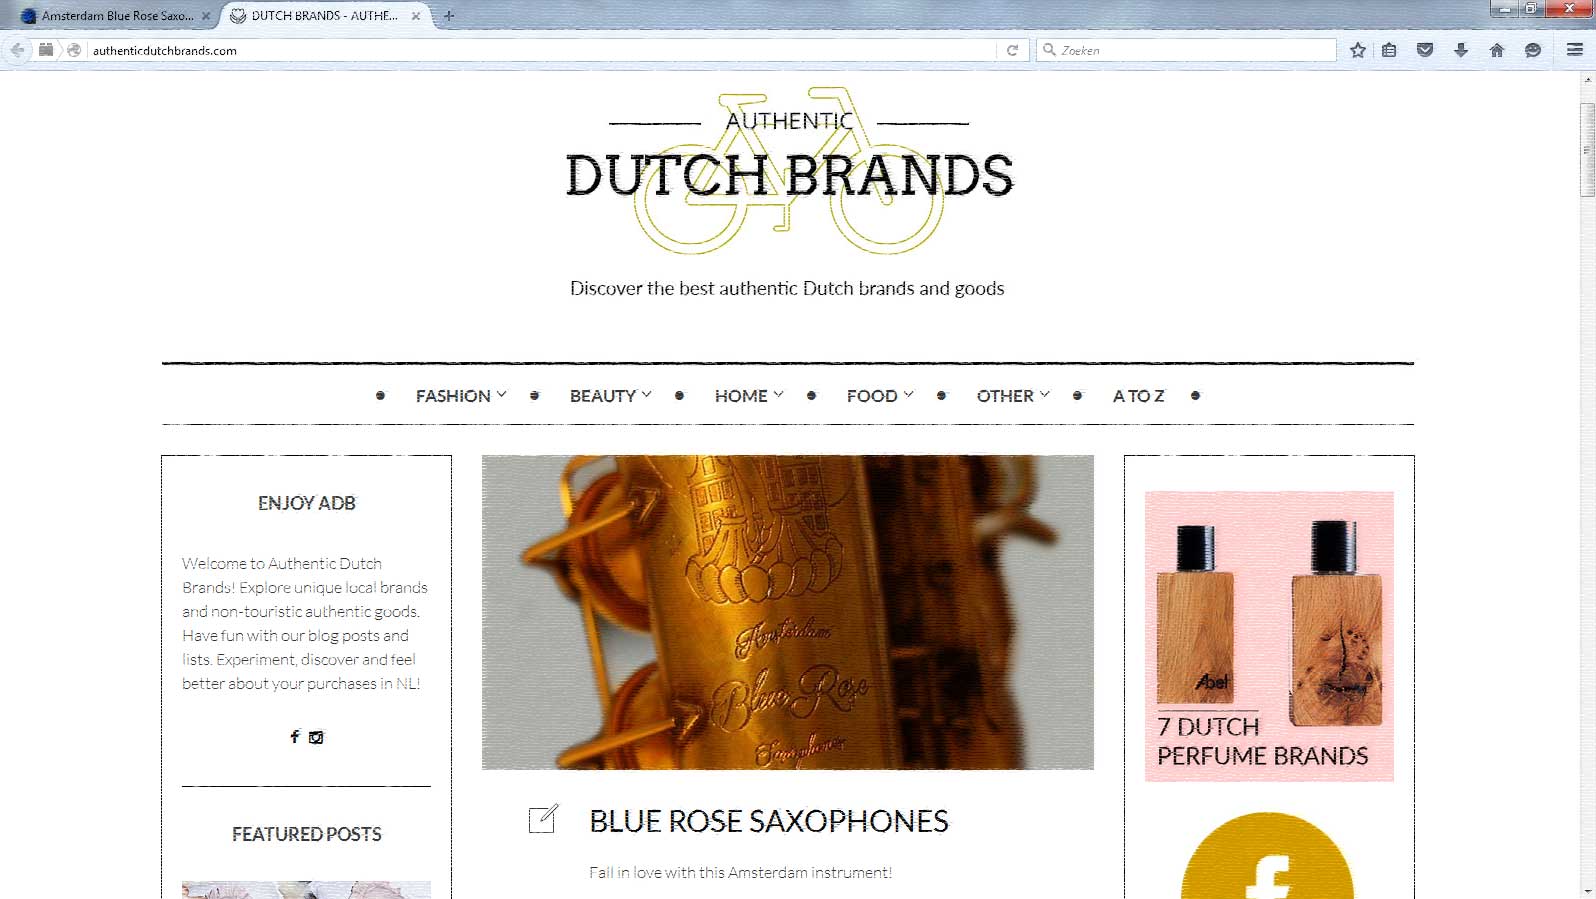 Blue Rose saxophons on Authentoc Dutch Brands